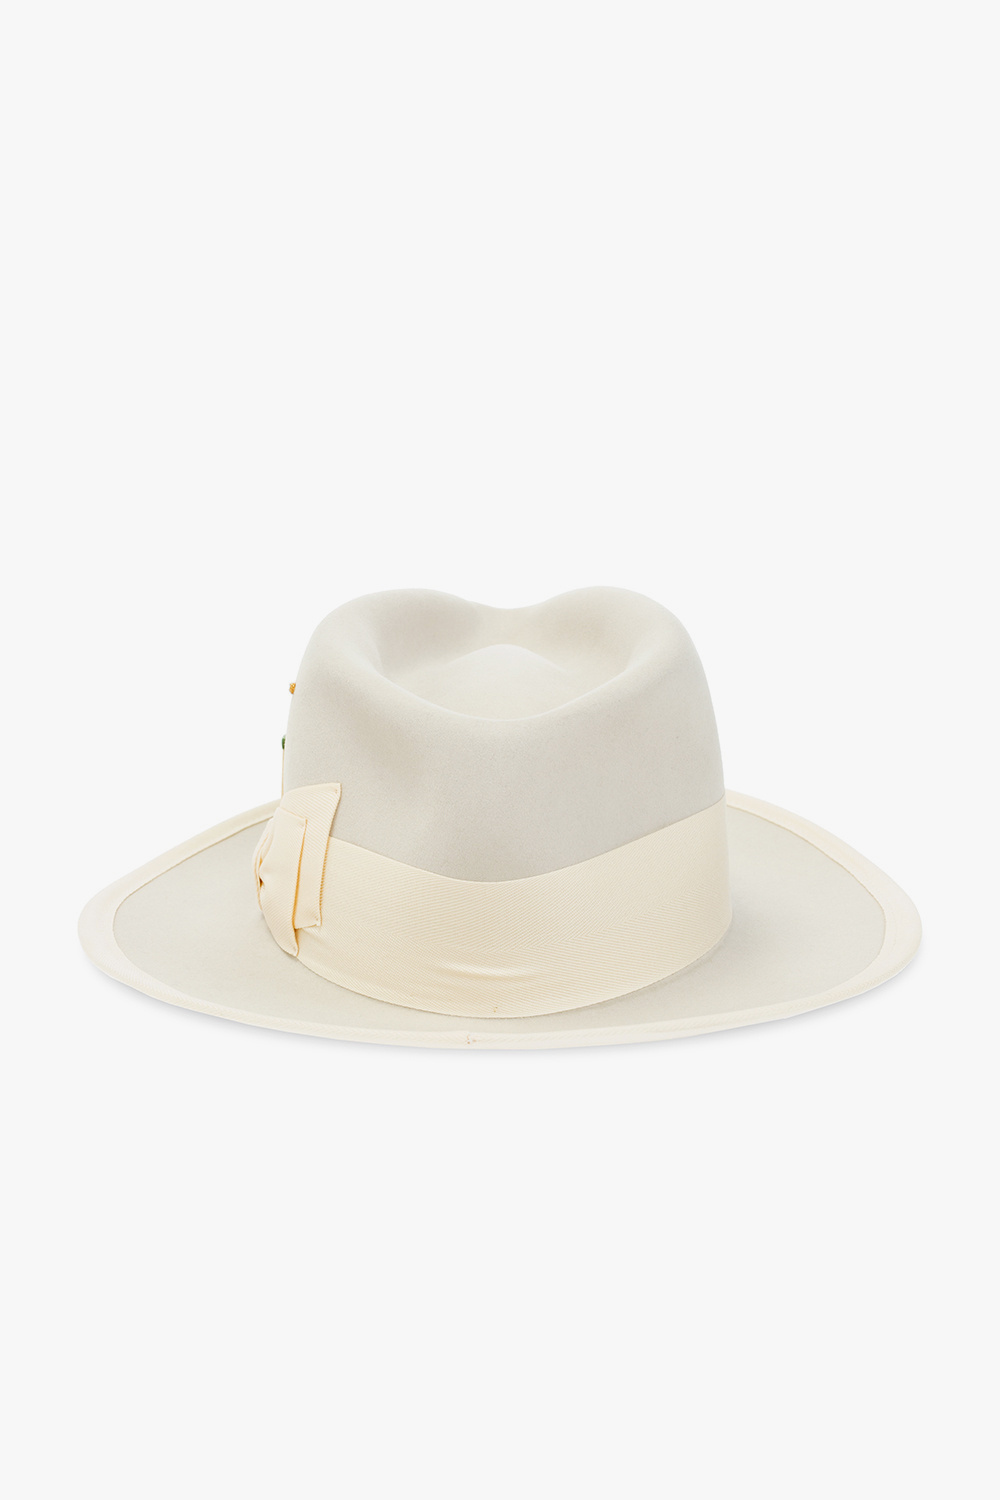 Nick Fouquet ‘Tuccio’ CAP hat